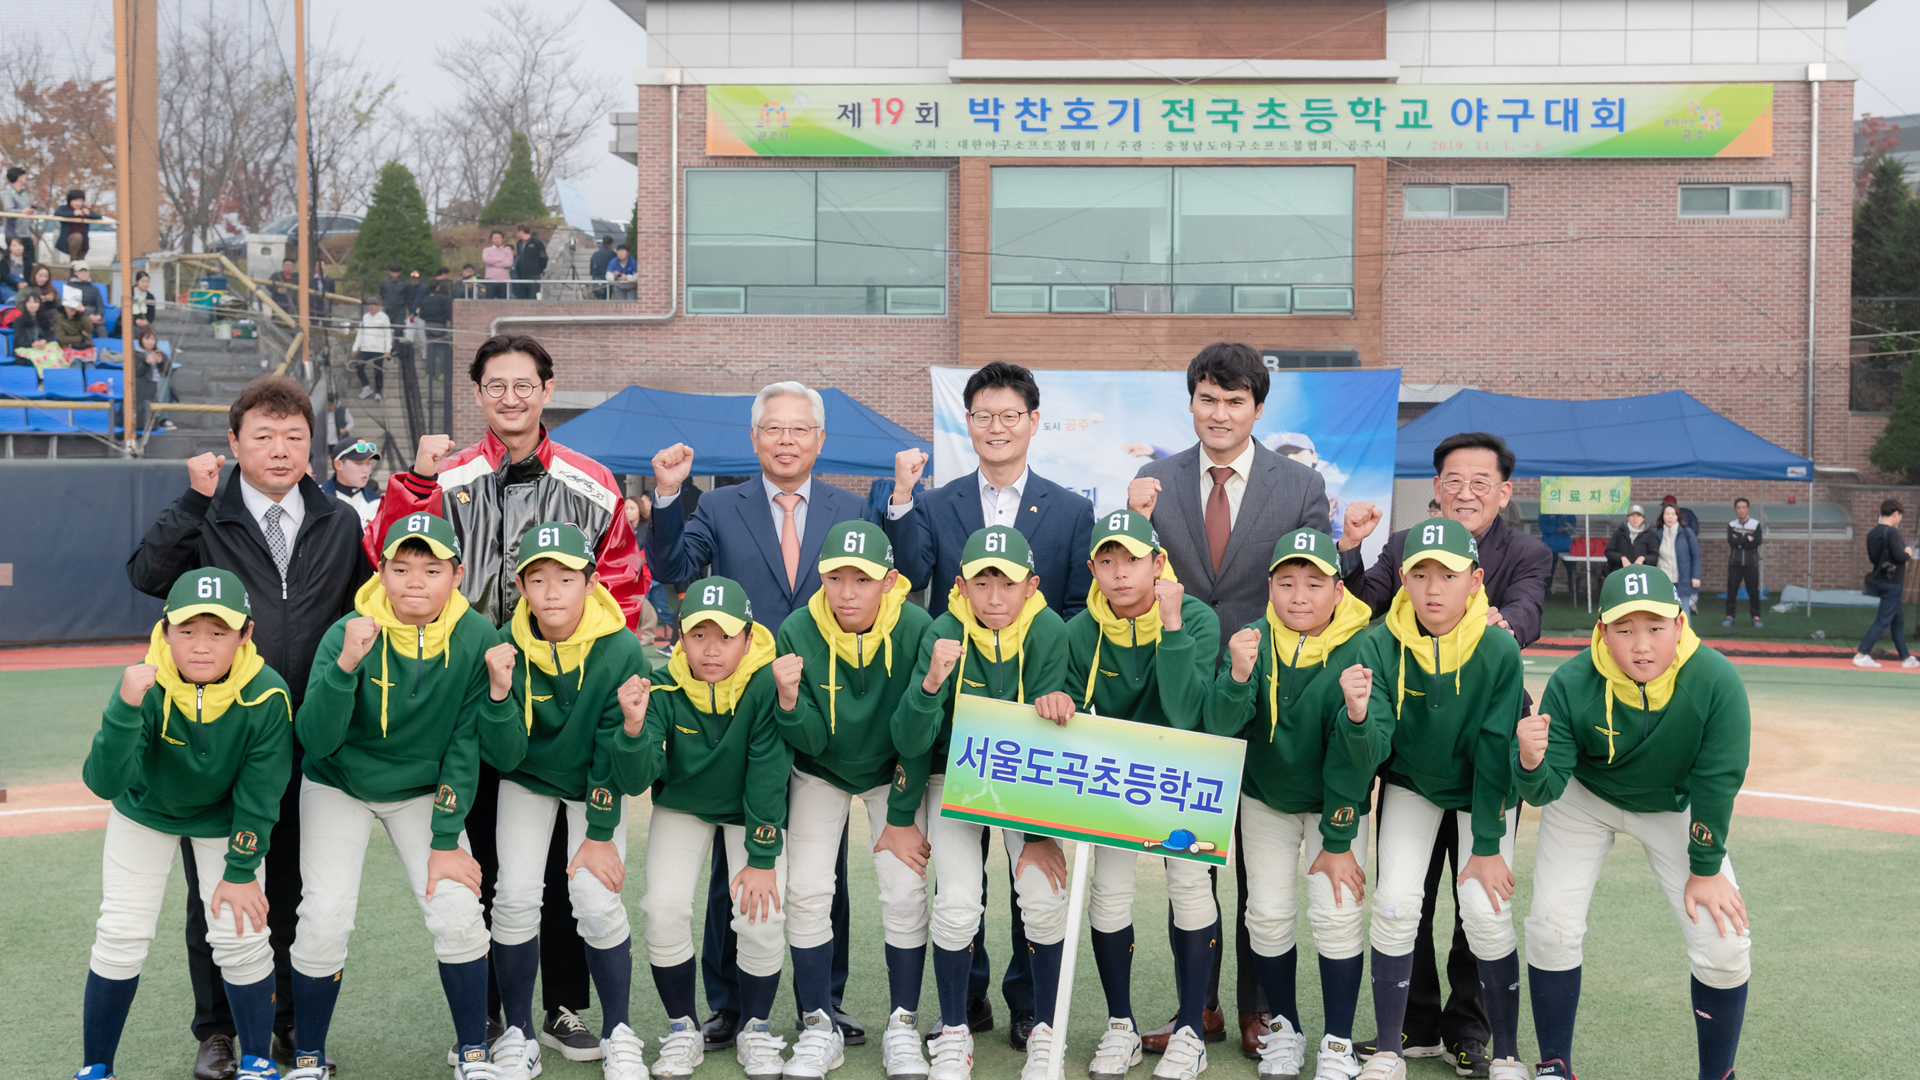 2019년11월1일 제19회 박찬호기 전국초등학교 야구대회 이미지